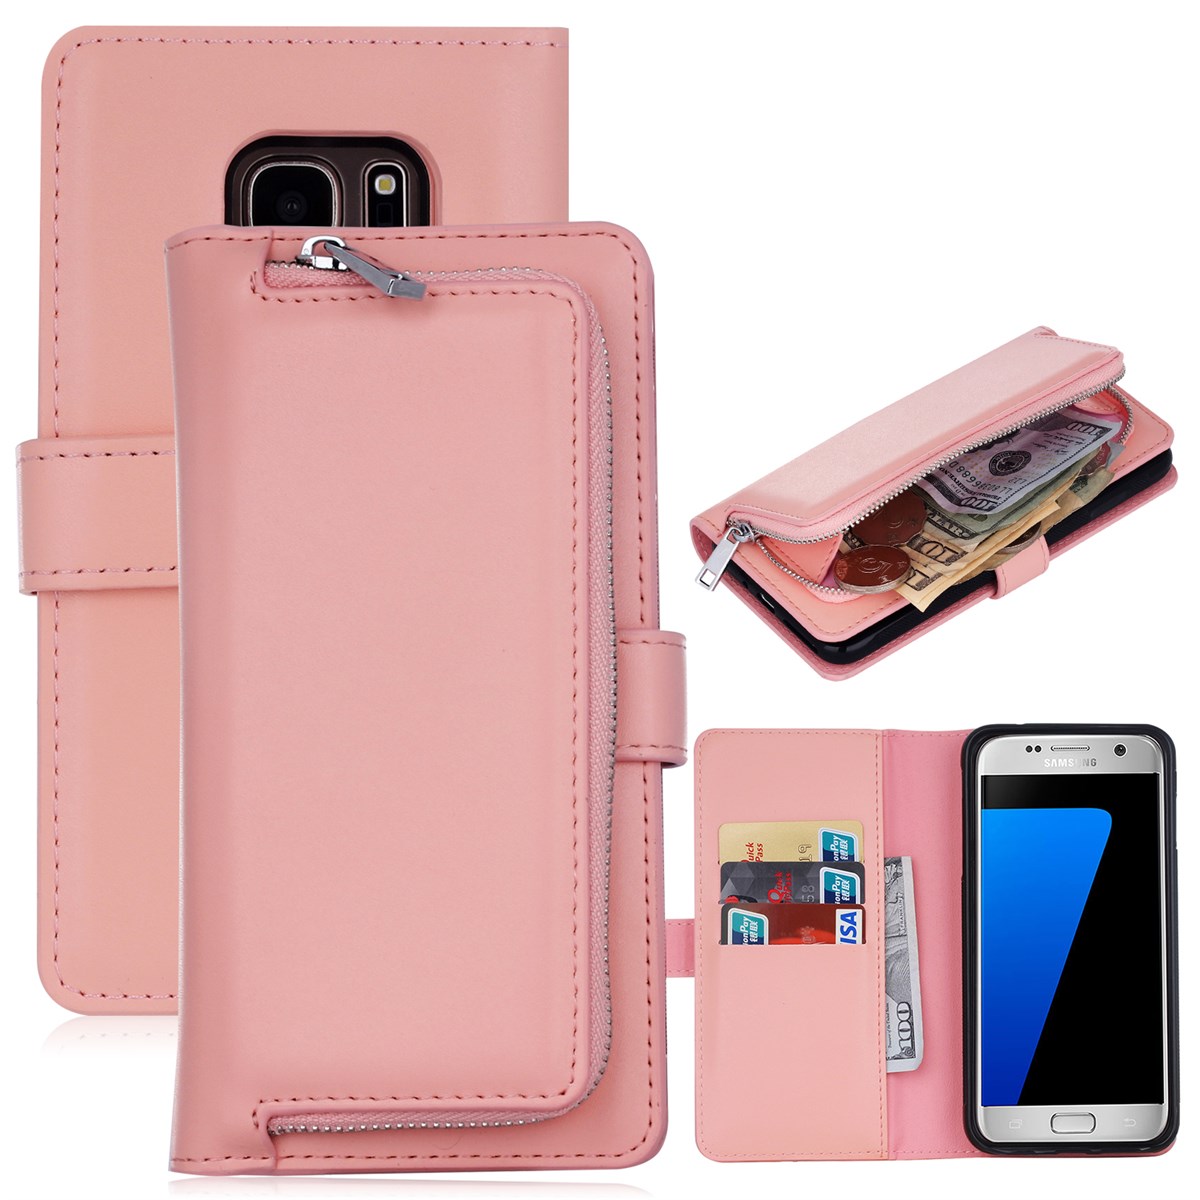 Voorzitter Kelder Huichelaar Delux multi-case met portemonnee en afneembare hoes voor Samsung Galaxy S7  Edge - Delicaat roze